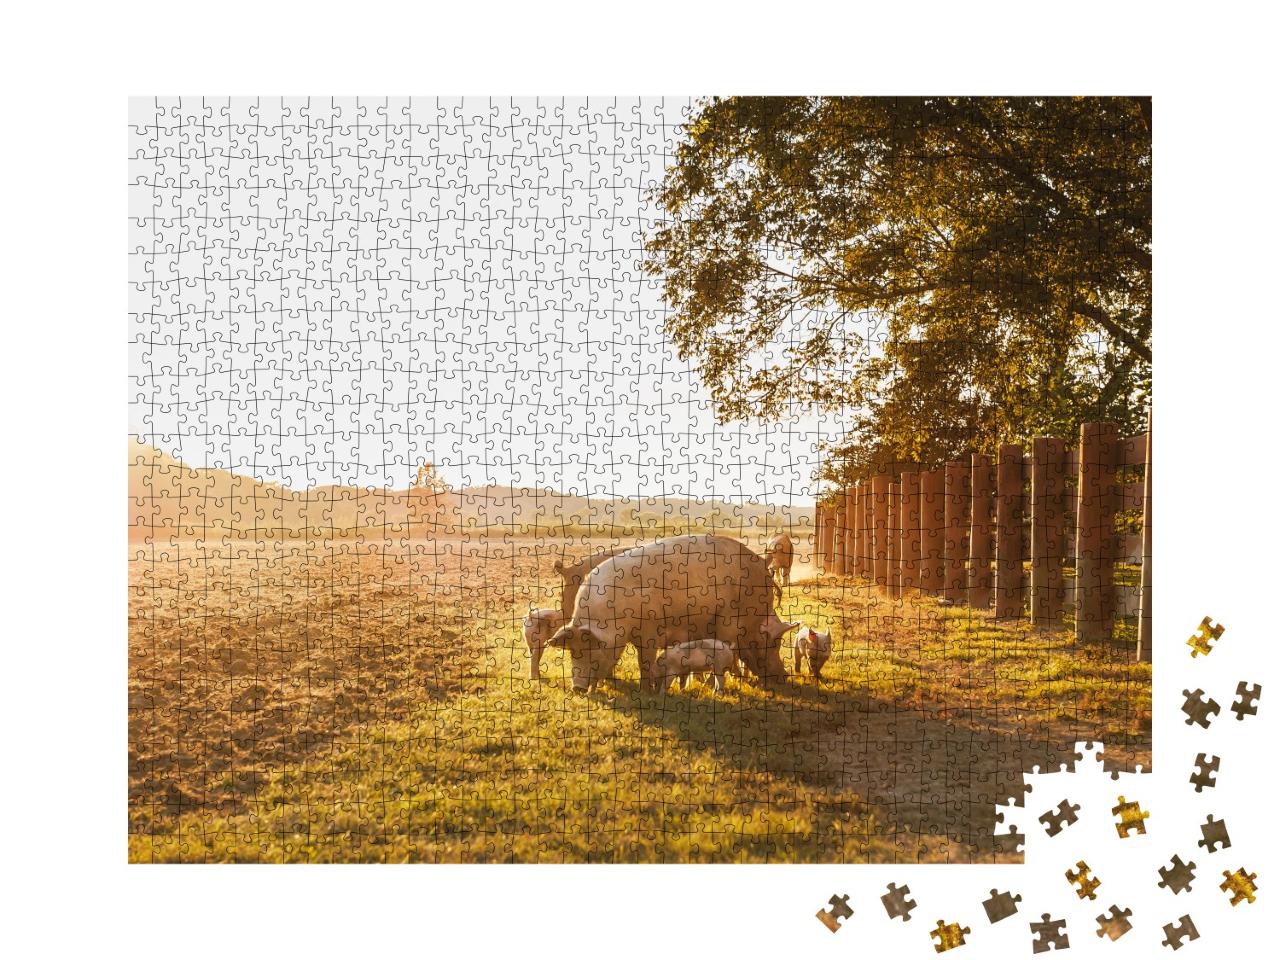 Puzzle 1000 Teile „Hausschwein mit kleinen Ferkelchen auf einer Wiese im Sonnenuntergang“